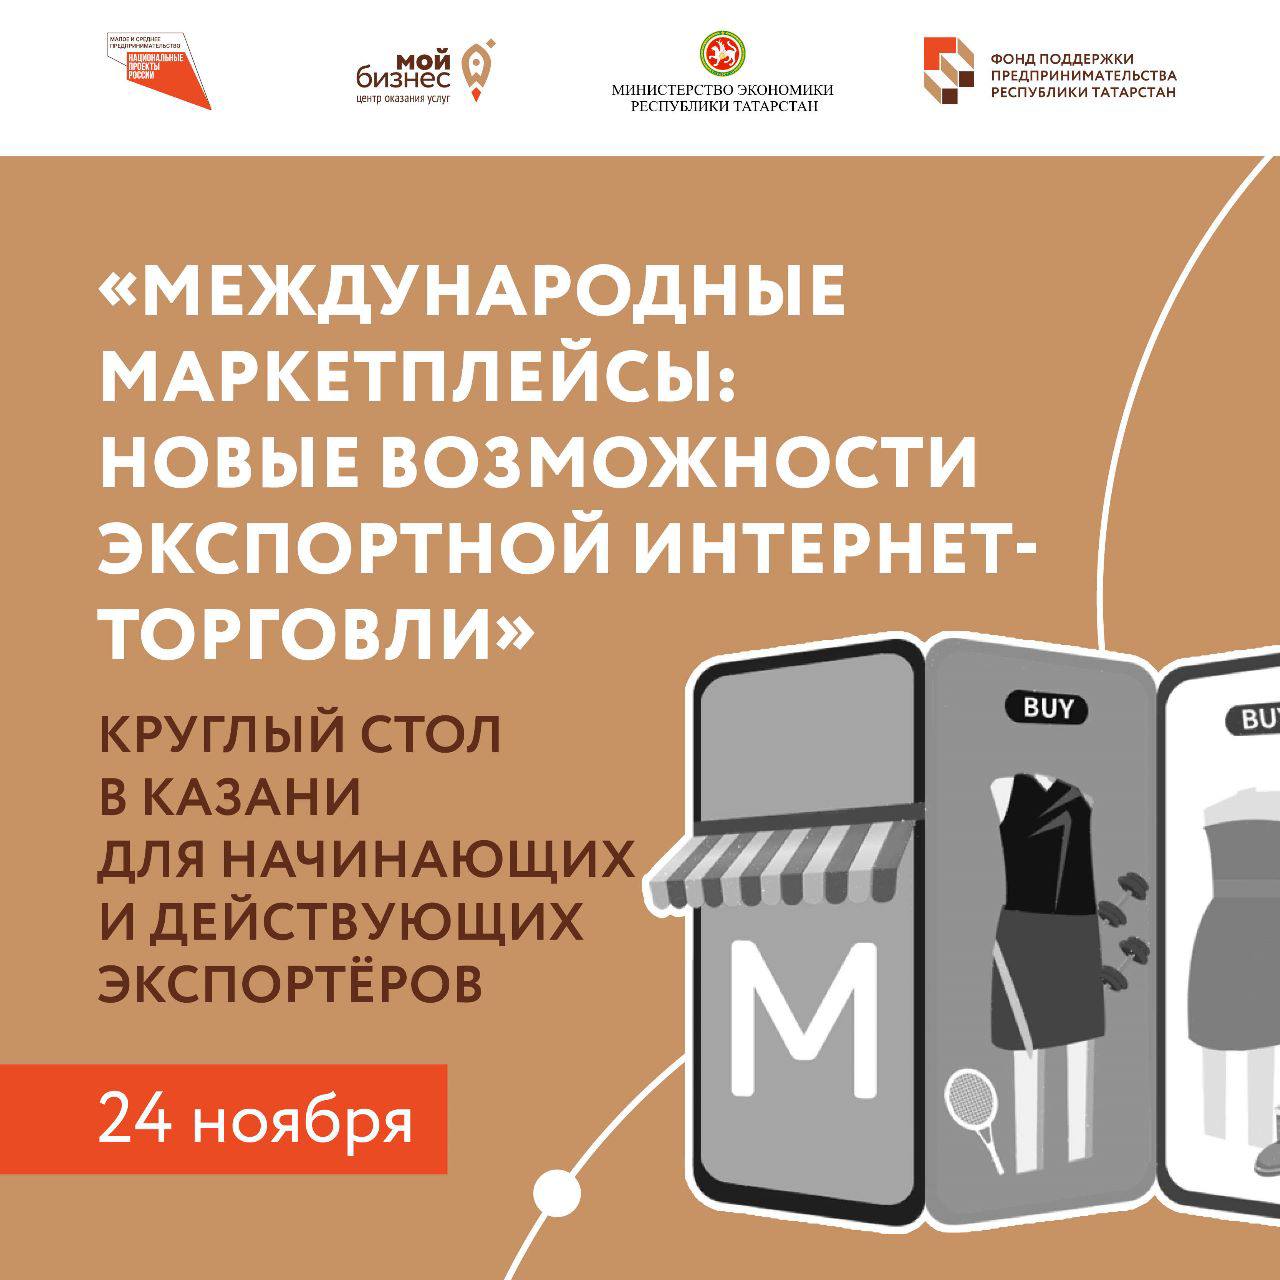 Предприниматели Татарстана изучат возможности торговли на международных маркетплейсах.